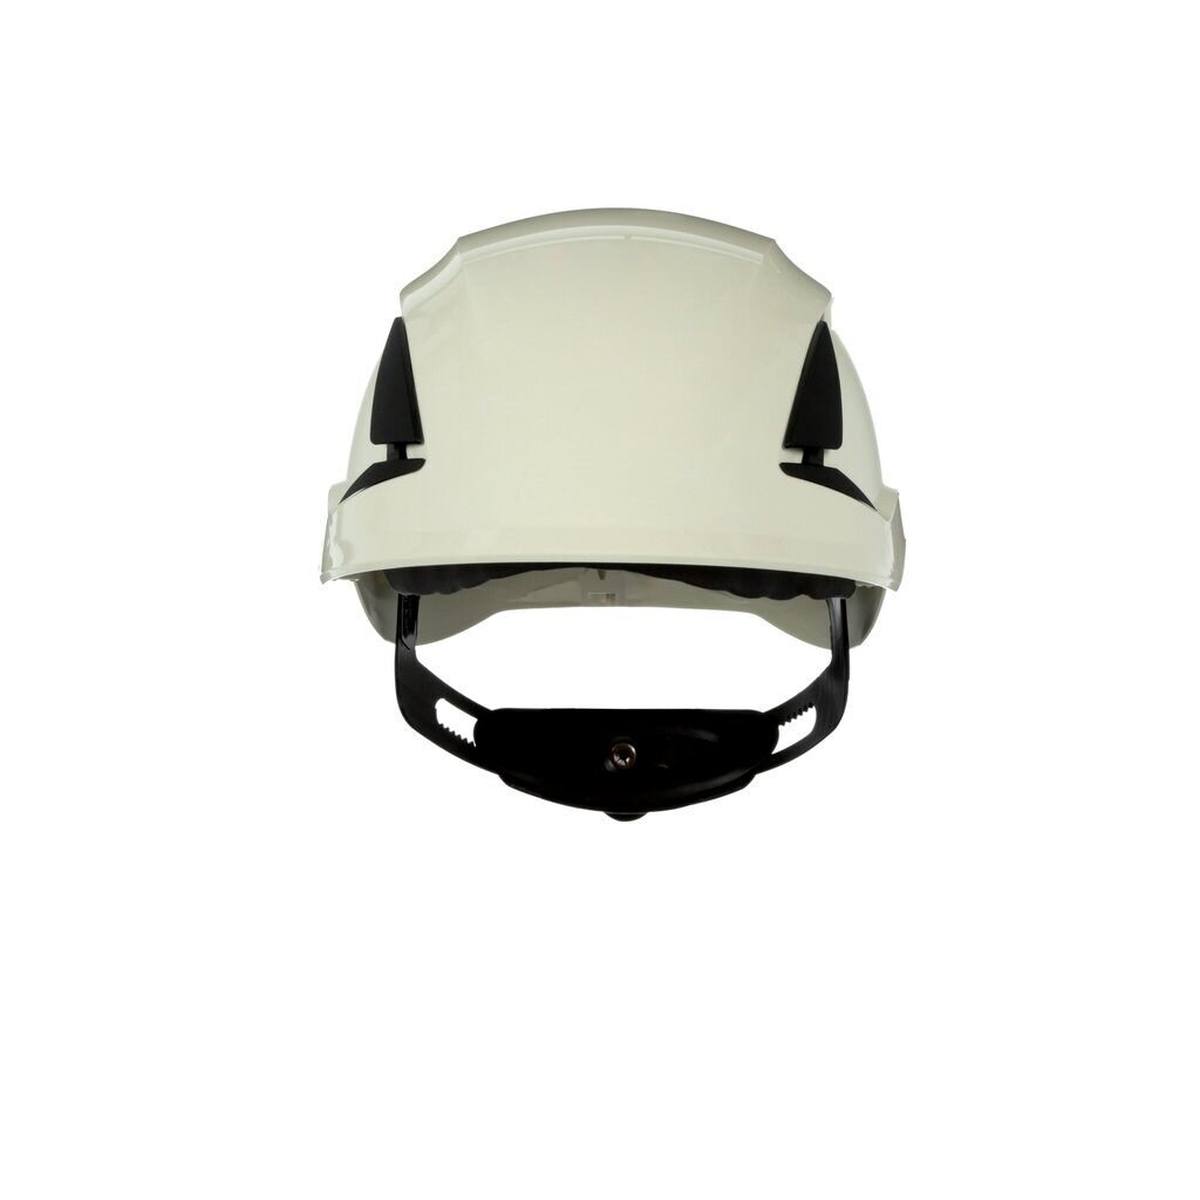 3M SecureFit casque de protection, X5501NVE-CE, blanc, non ventilé, CE